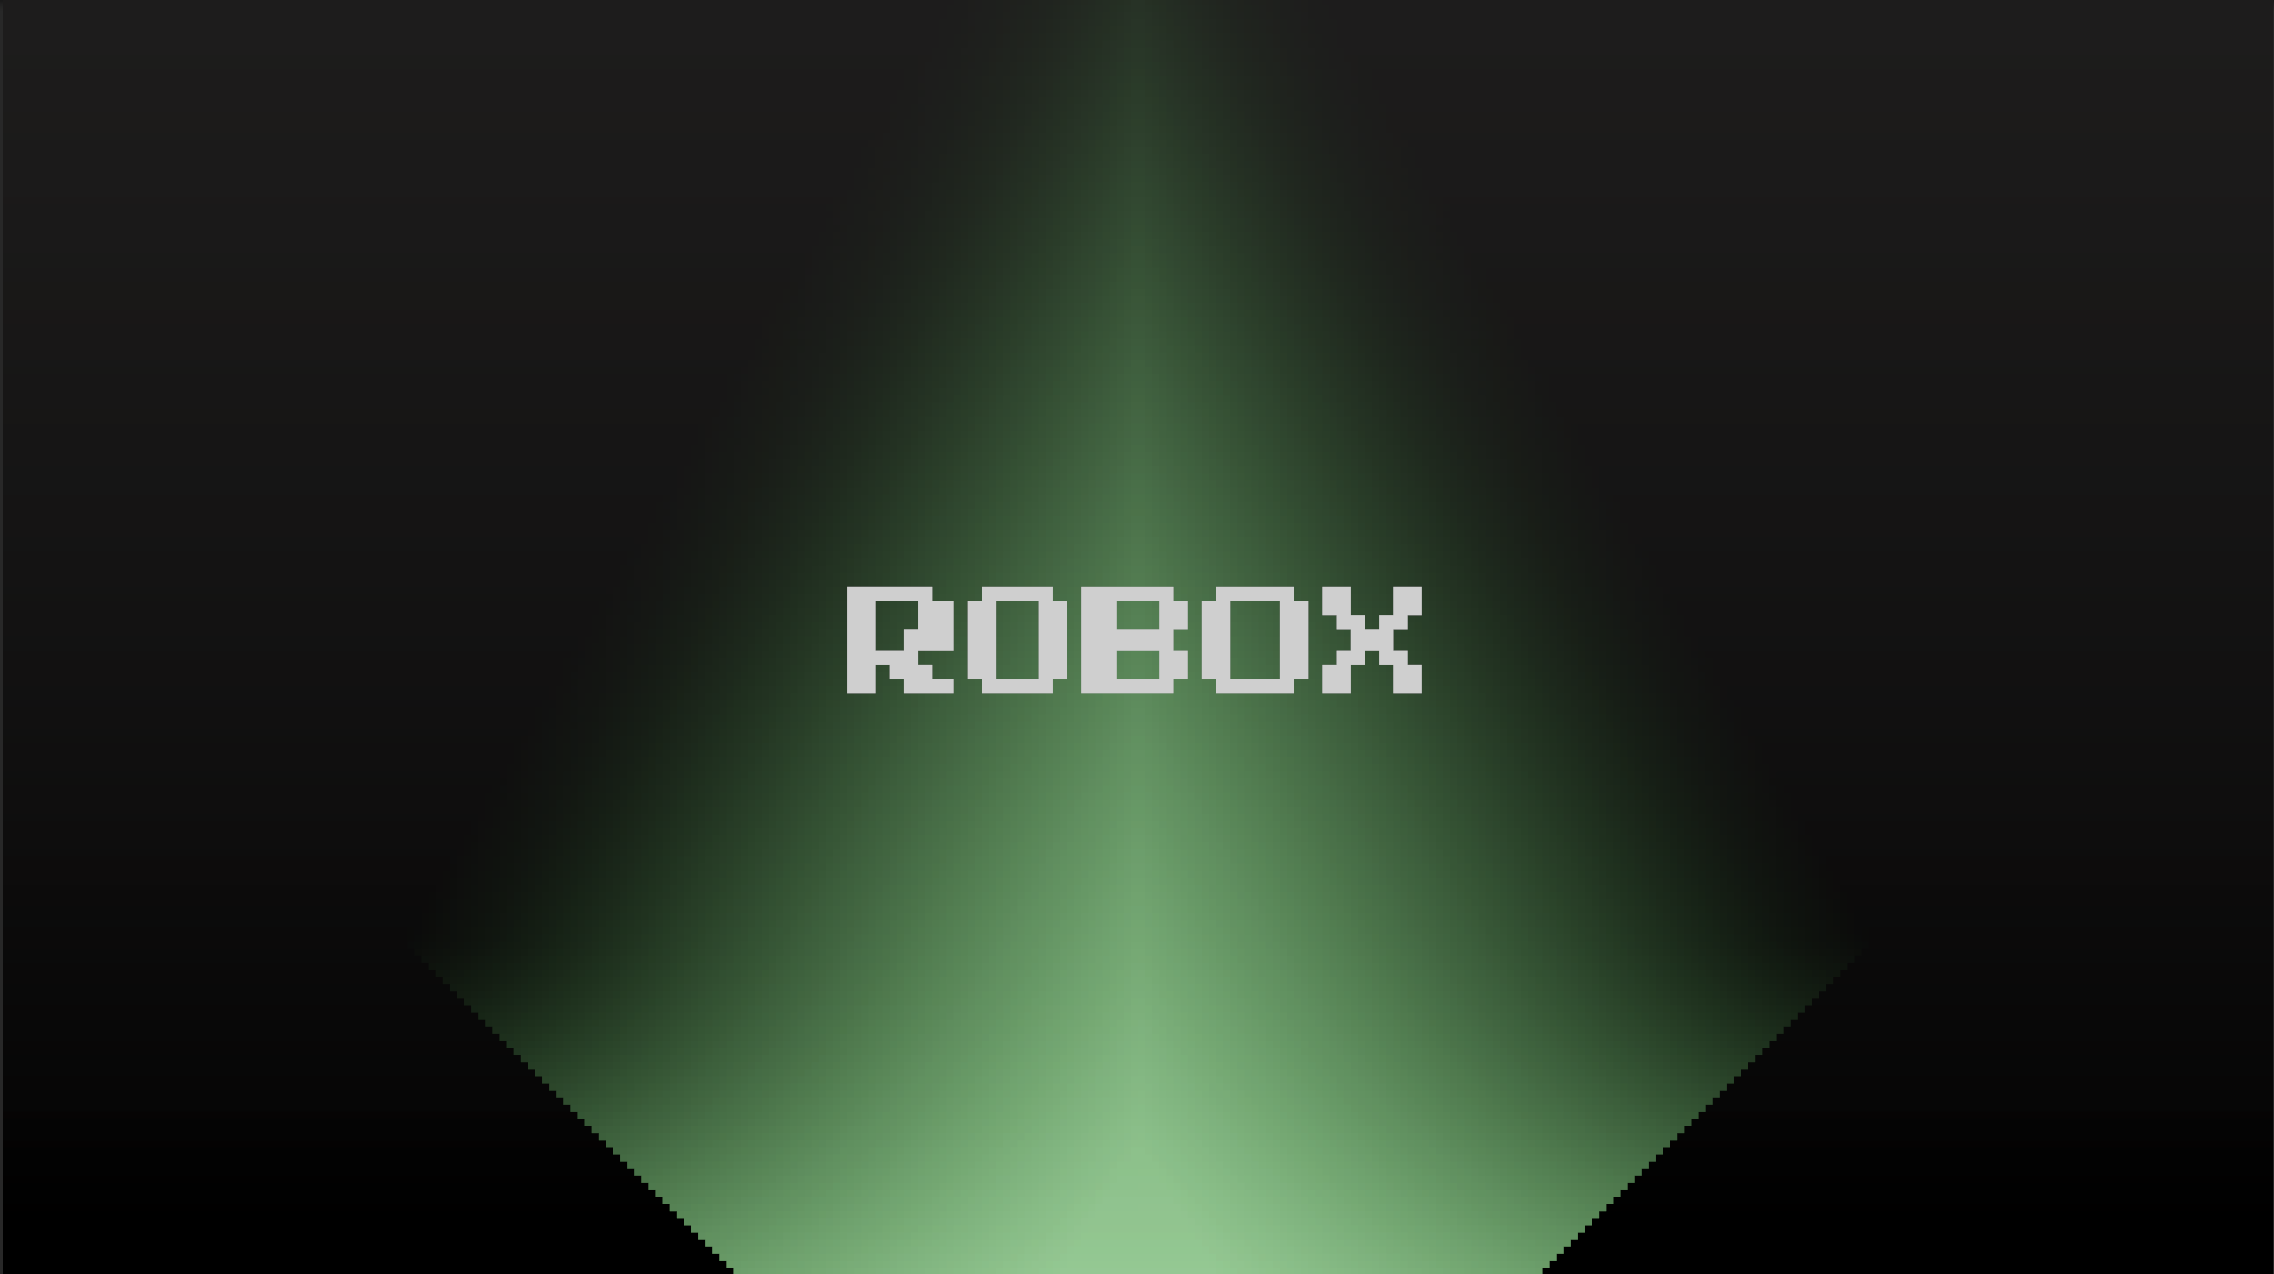 ROBOX